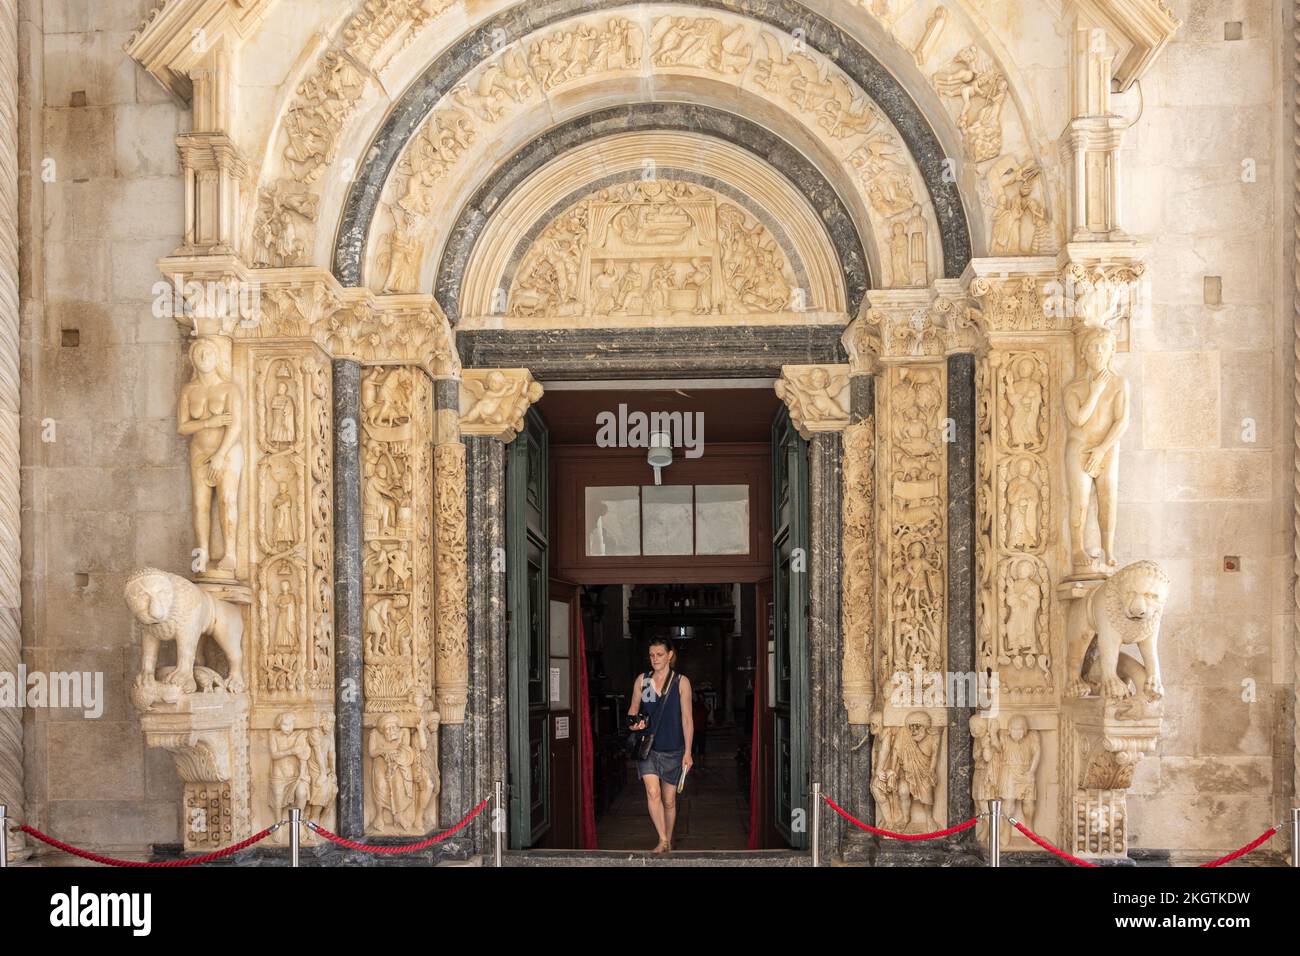 Portal von Radovan am Eingang zur Kathedrale von Trogir, Kula Sv Marka, Altstadt, Trogir, Gespanschaft Split-Dalmatien, Kroatien Stockfoto